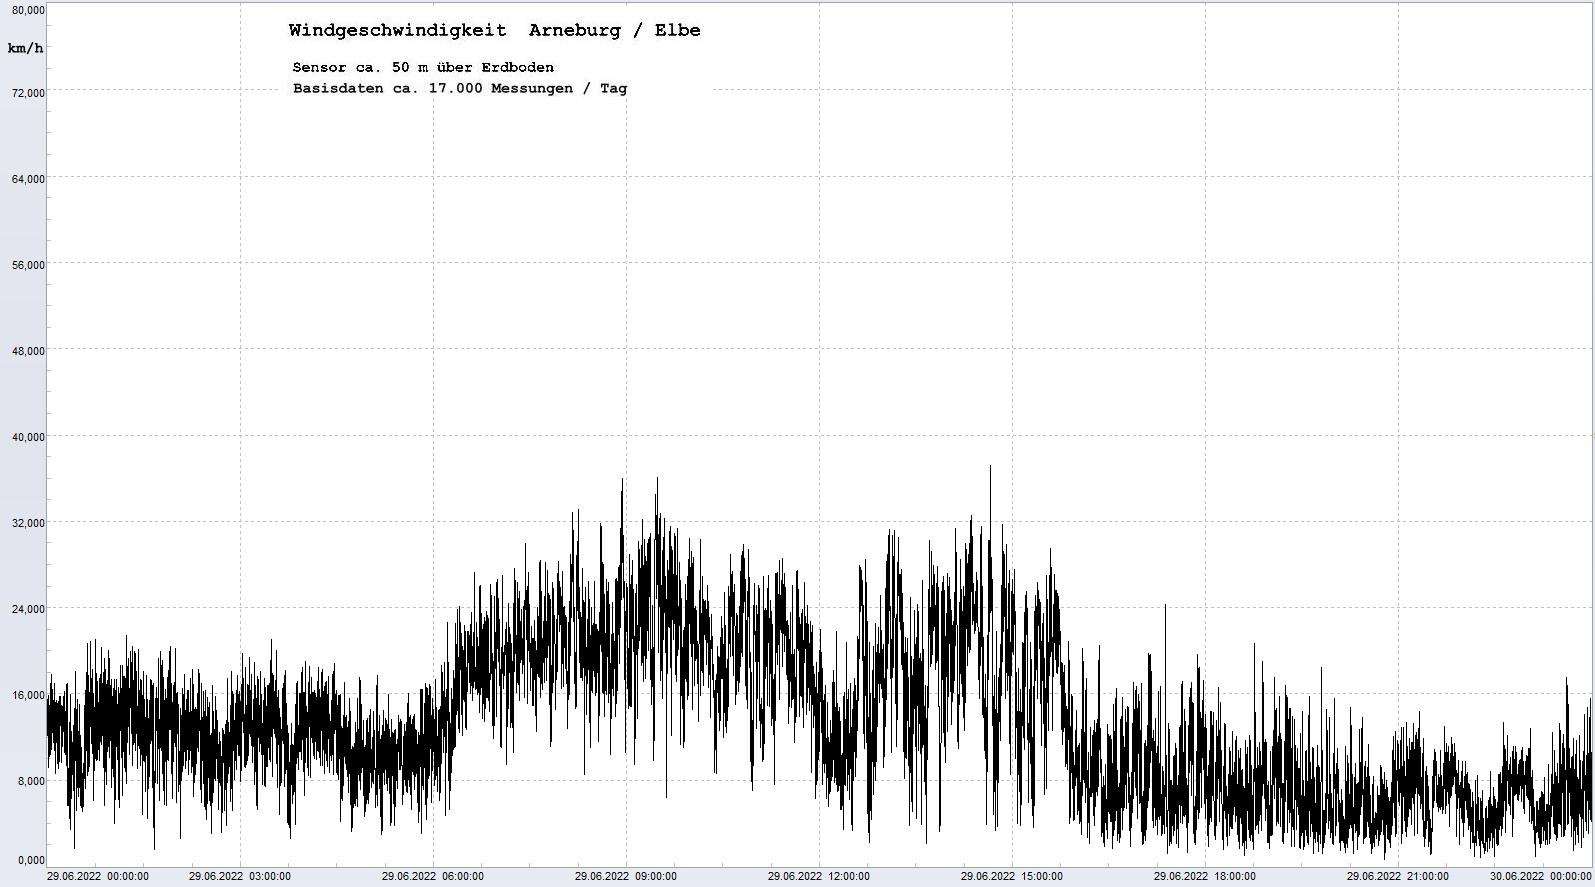 Arneburg Tages-Diagramm Winddaten, 29.06.2022
  Diagramm, Sensor auf Gebäude, ca. 50 m über Erdboden, Basis: 5s-Aufzeichnung